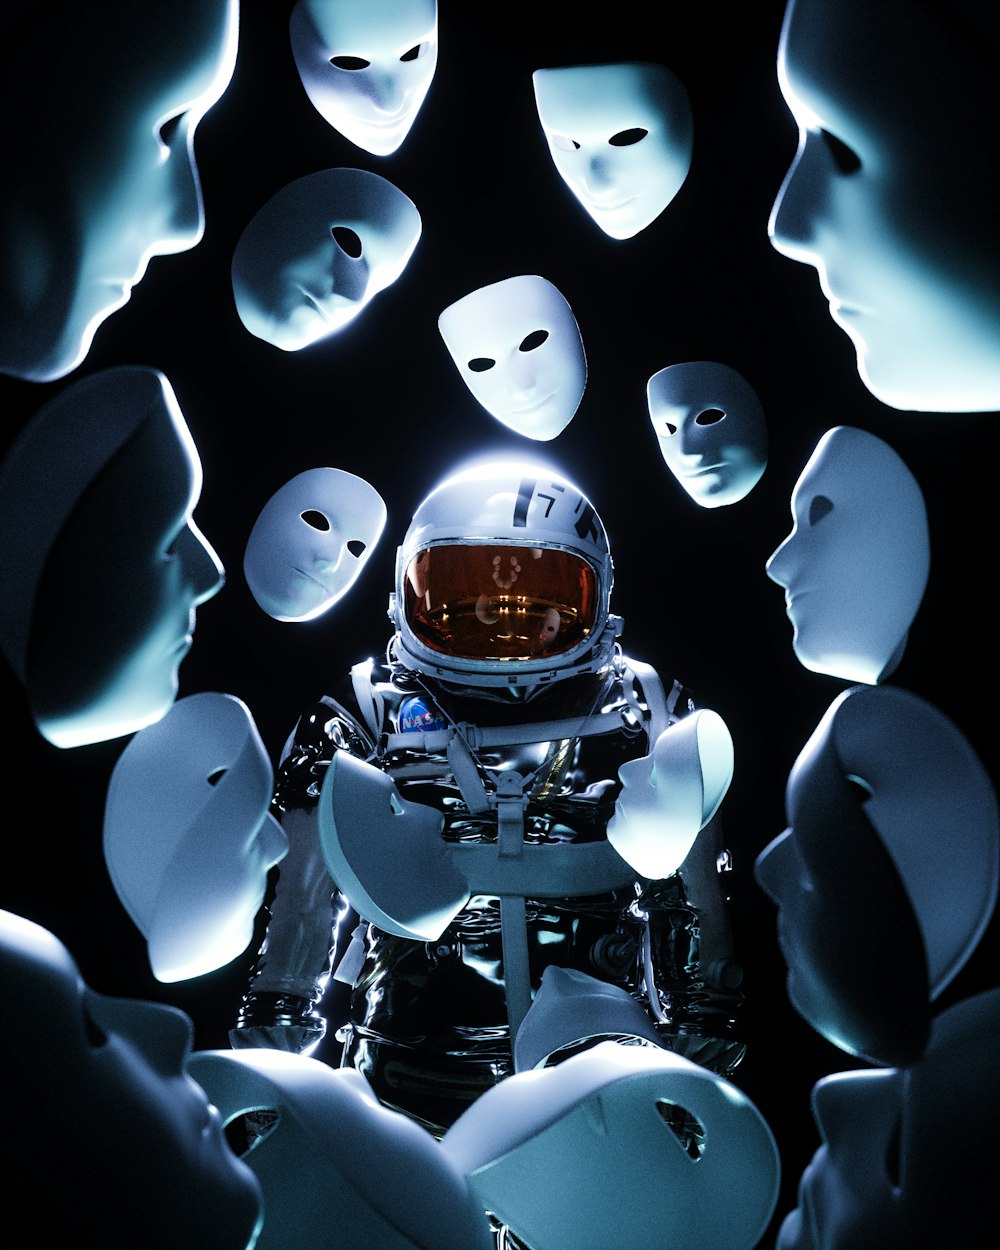 하얀 마스크로 둘러싸인 우주복을 입은 남자